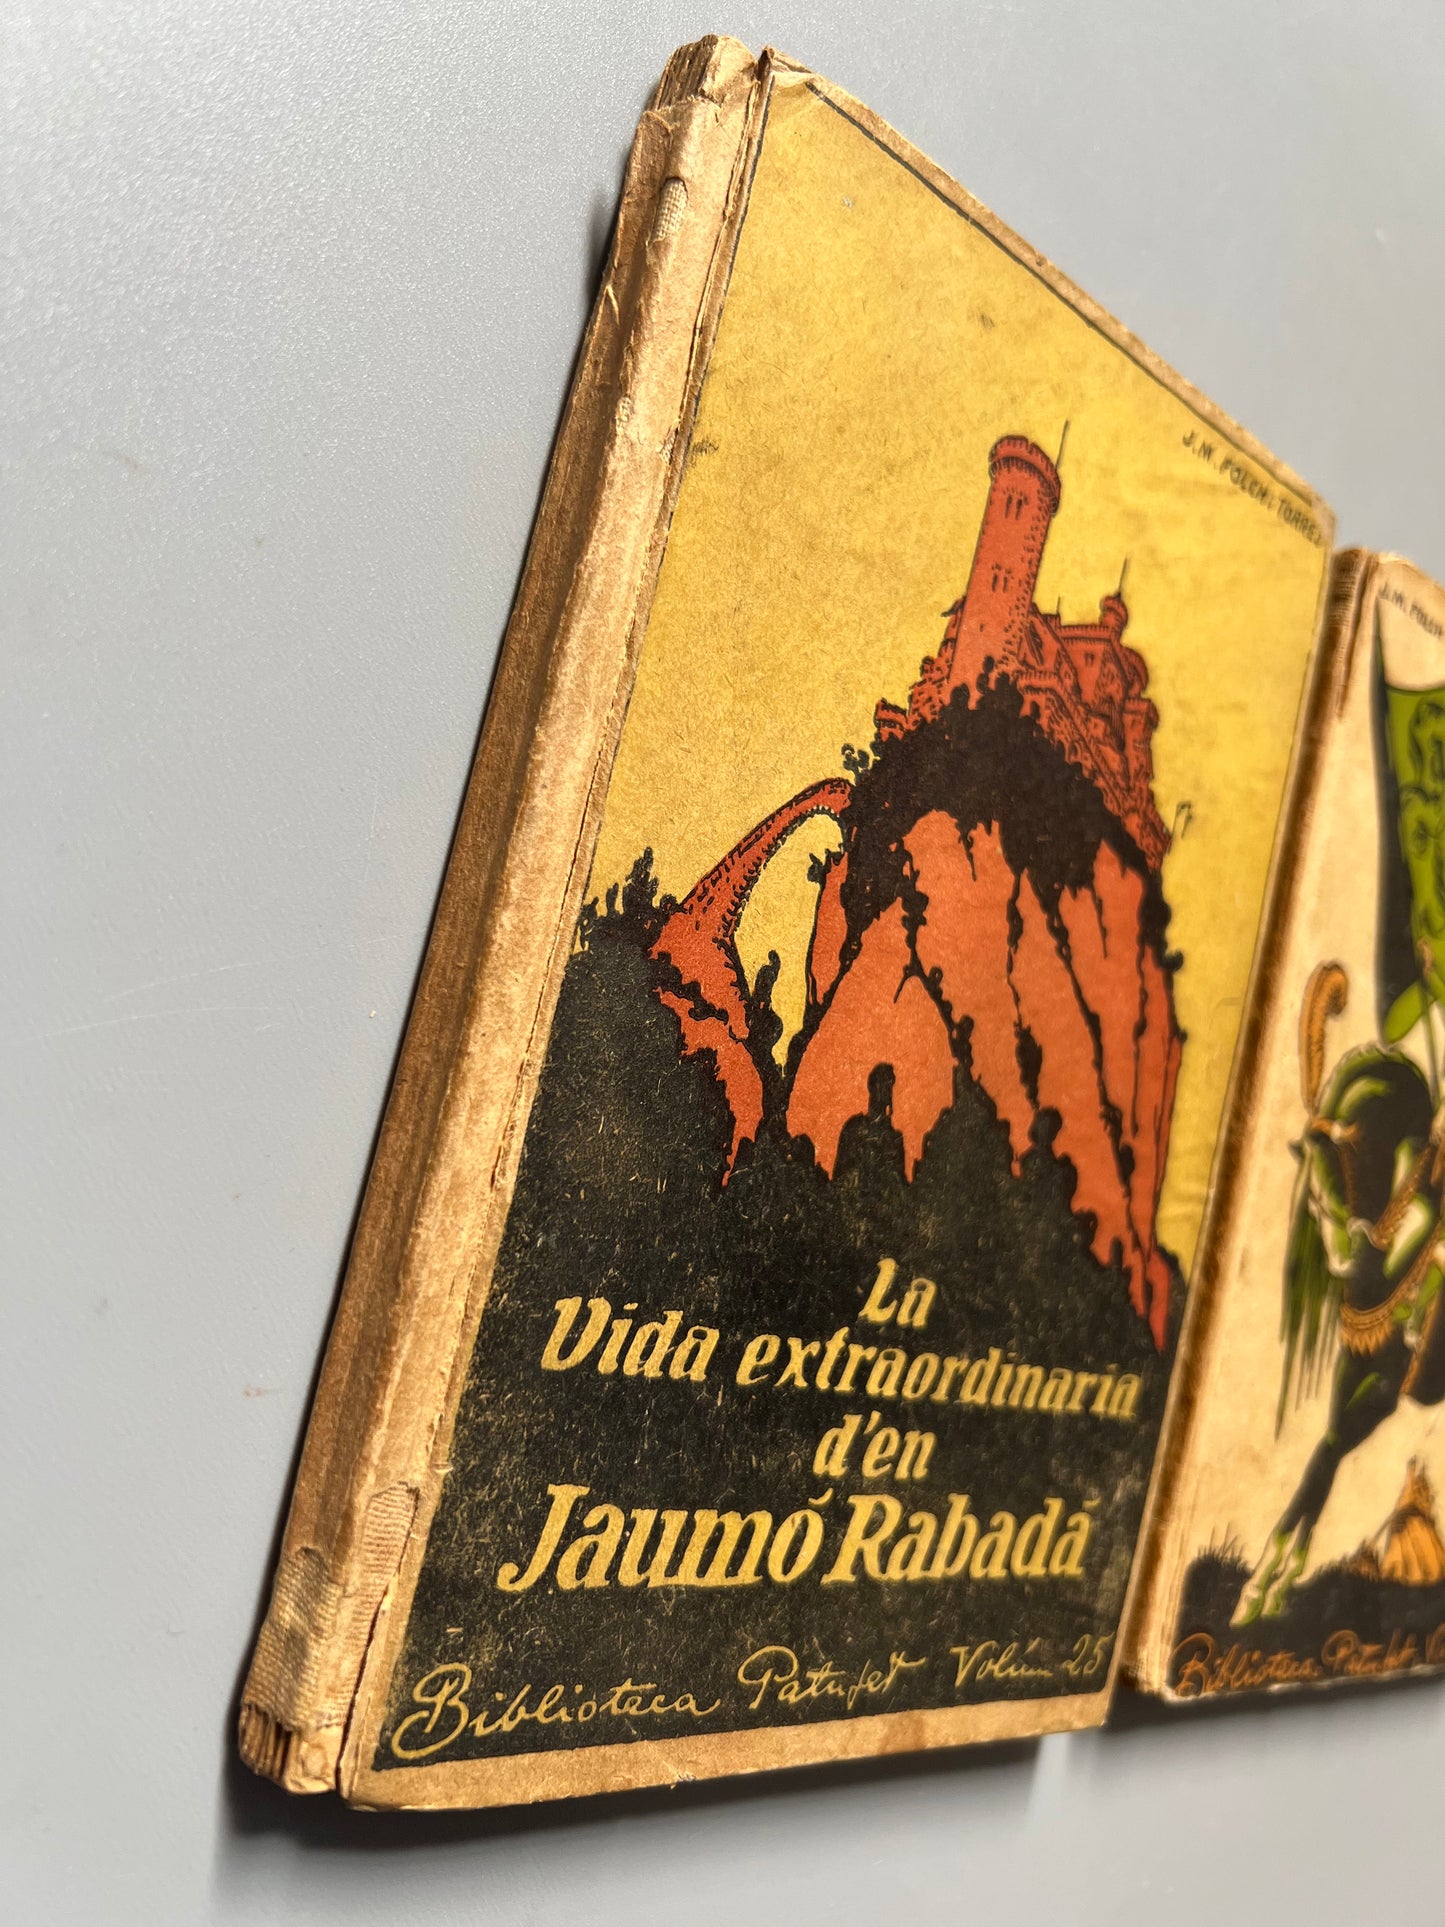 La vida extraordinaria d'en Jaumó Rabadá y La gloria d'en Jaumó Rabadá, J. M. Folch i Torres - J. Baguñá editor i llibreter, 1915/1916